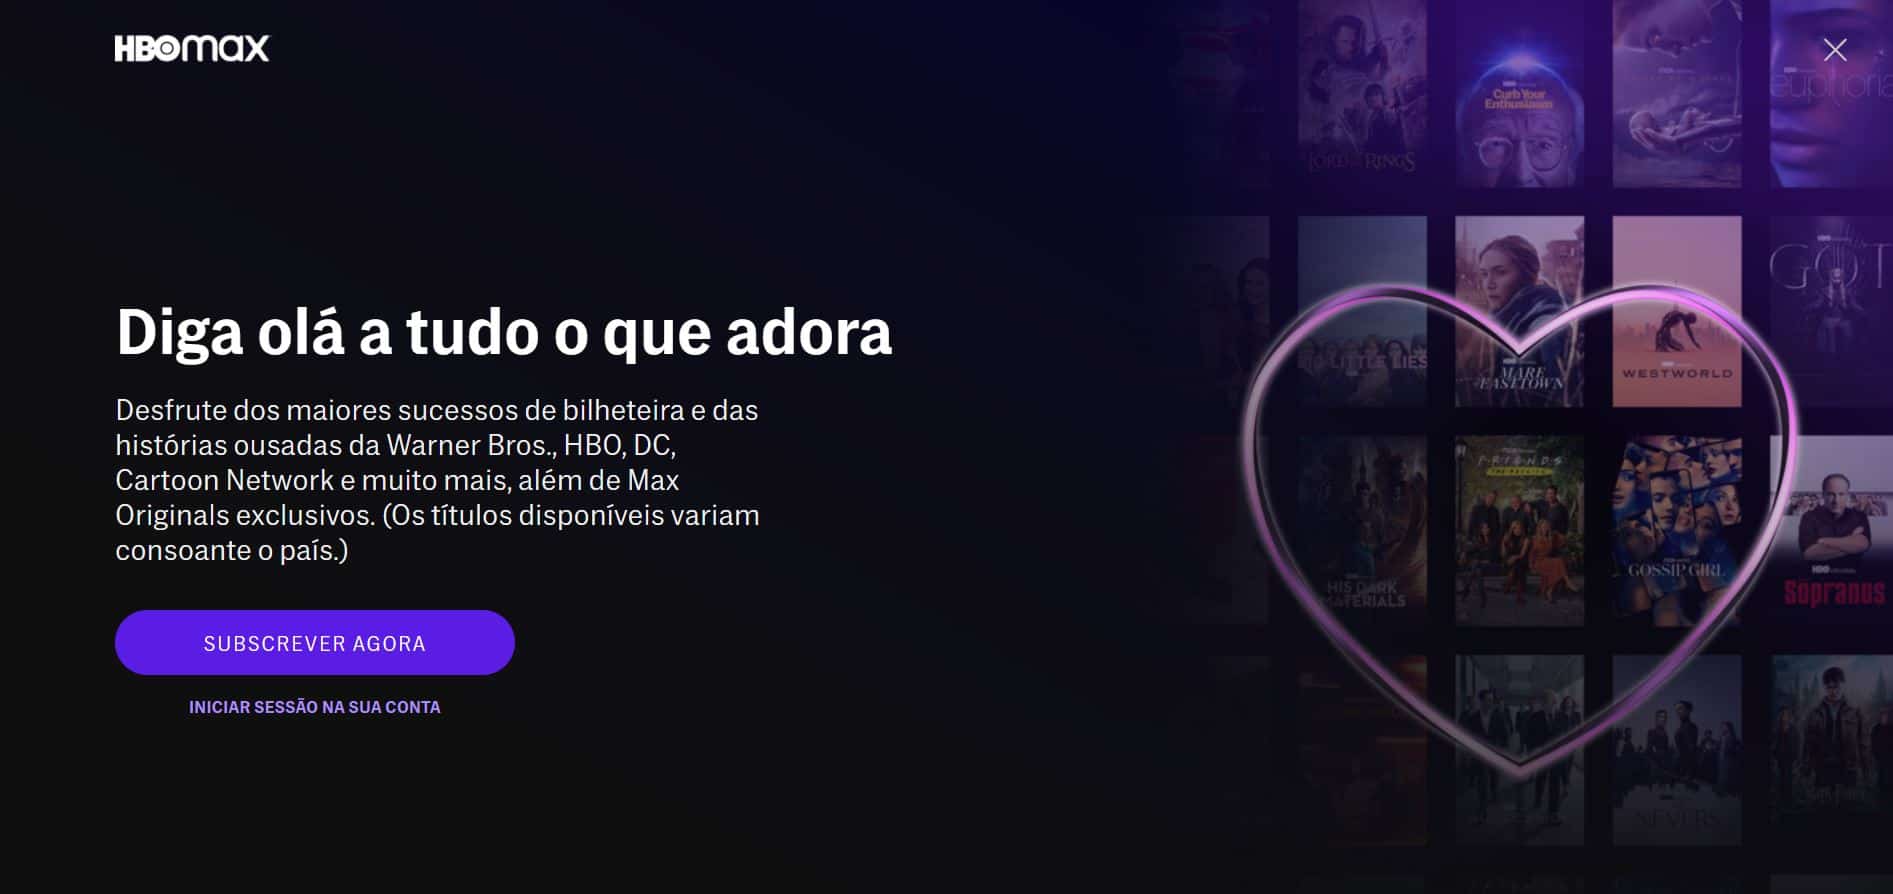 HBO Portugal: 9 coisas que tem mesmo de saber sobre o novo serviço de  streaming